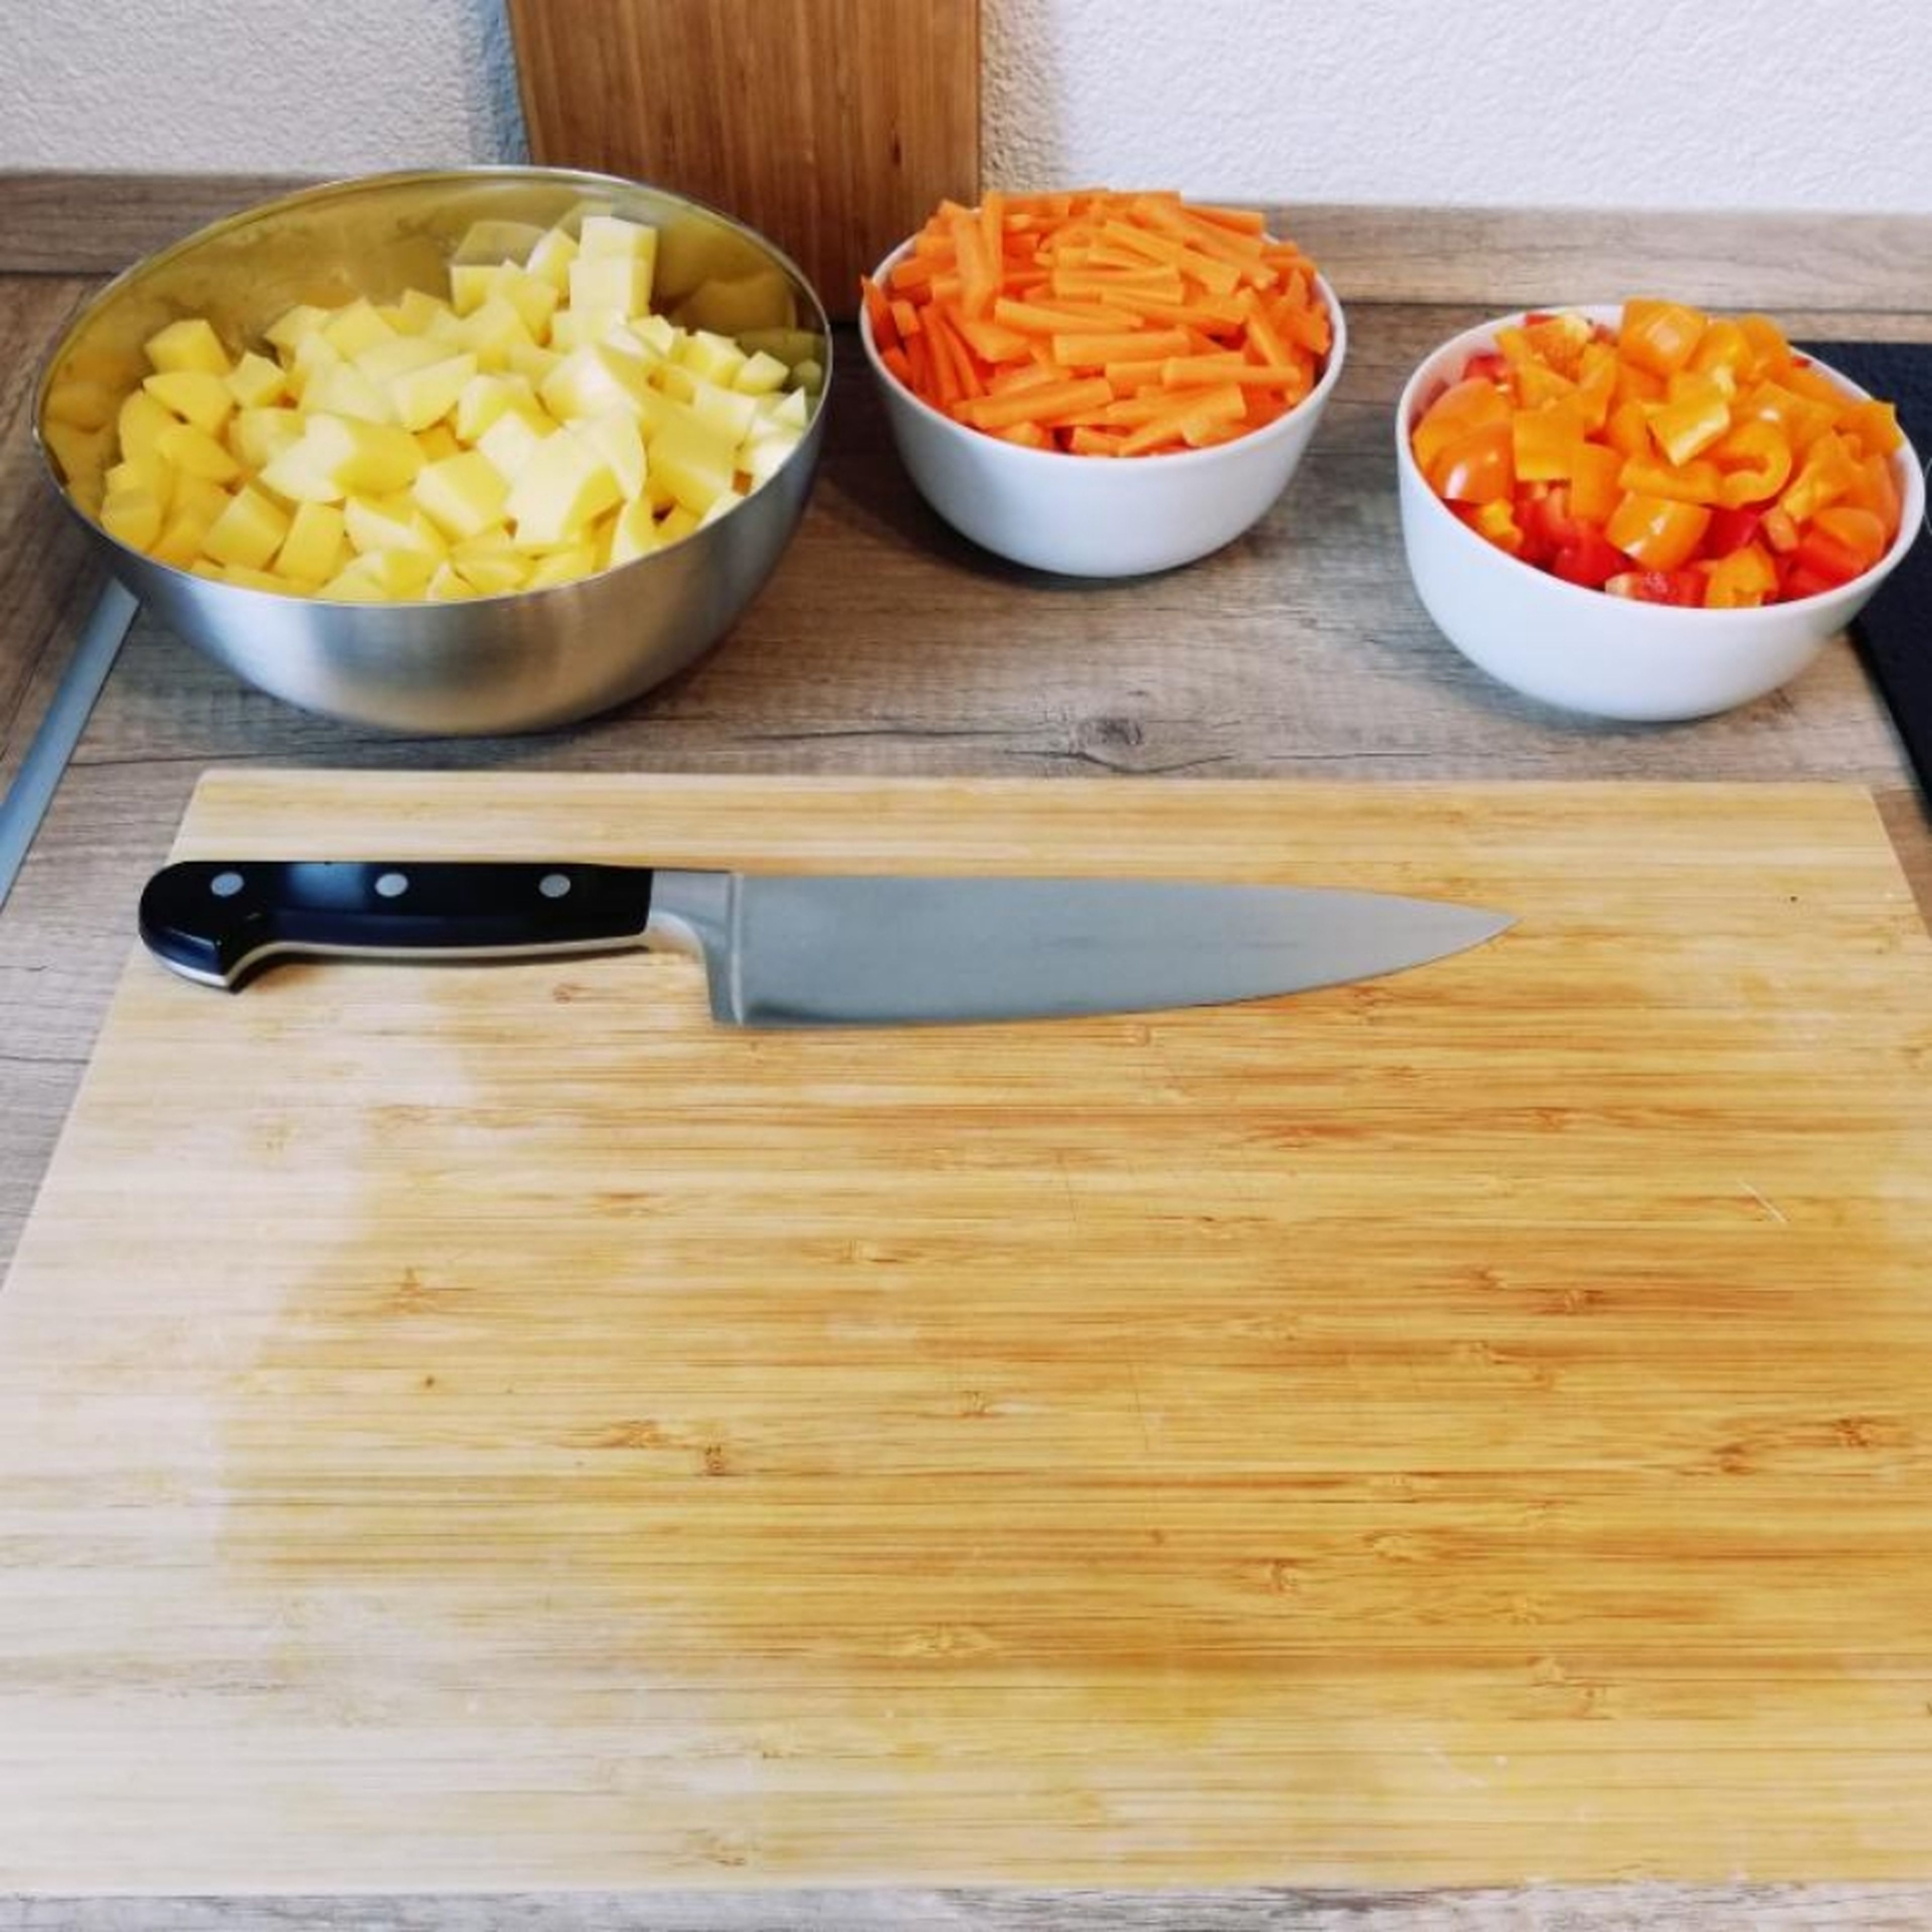 Kartoffeln und Karotten schälen. Kartoffel und Paprika in Würfel und Karotten in Streifen schneiden. Gemüse zum Gulasch geben. Alles für weitere ca. 20 – 30 Min. köcheln lassen.